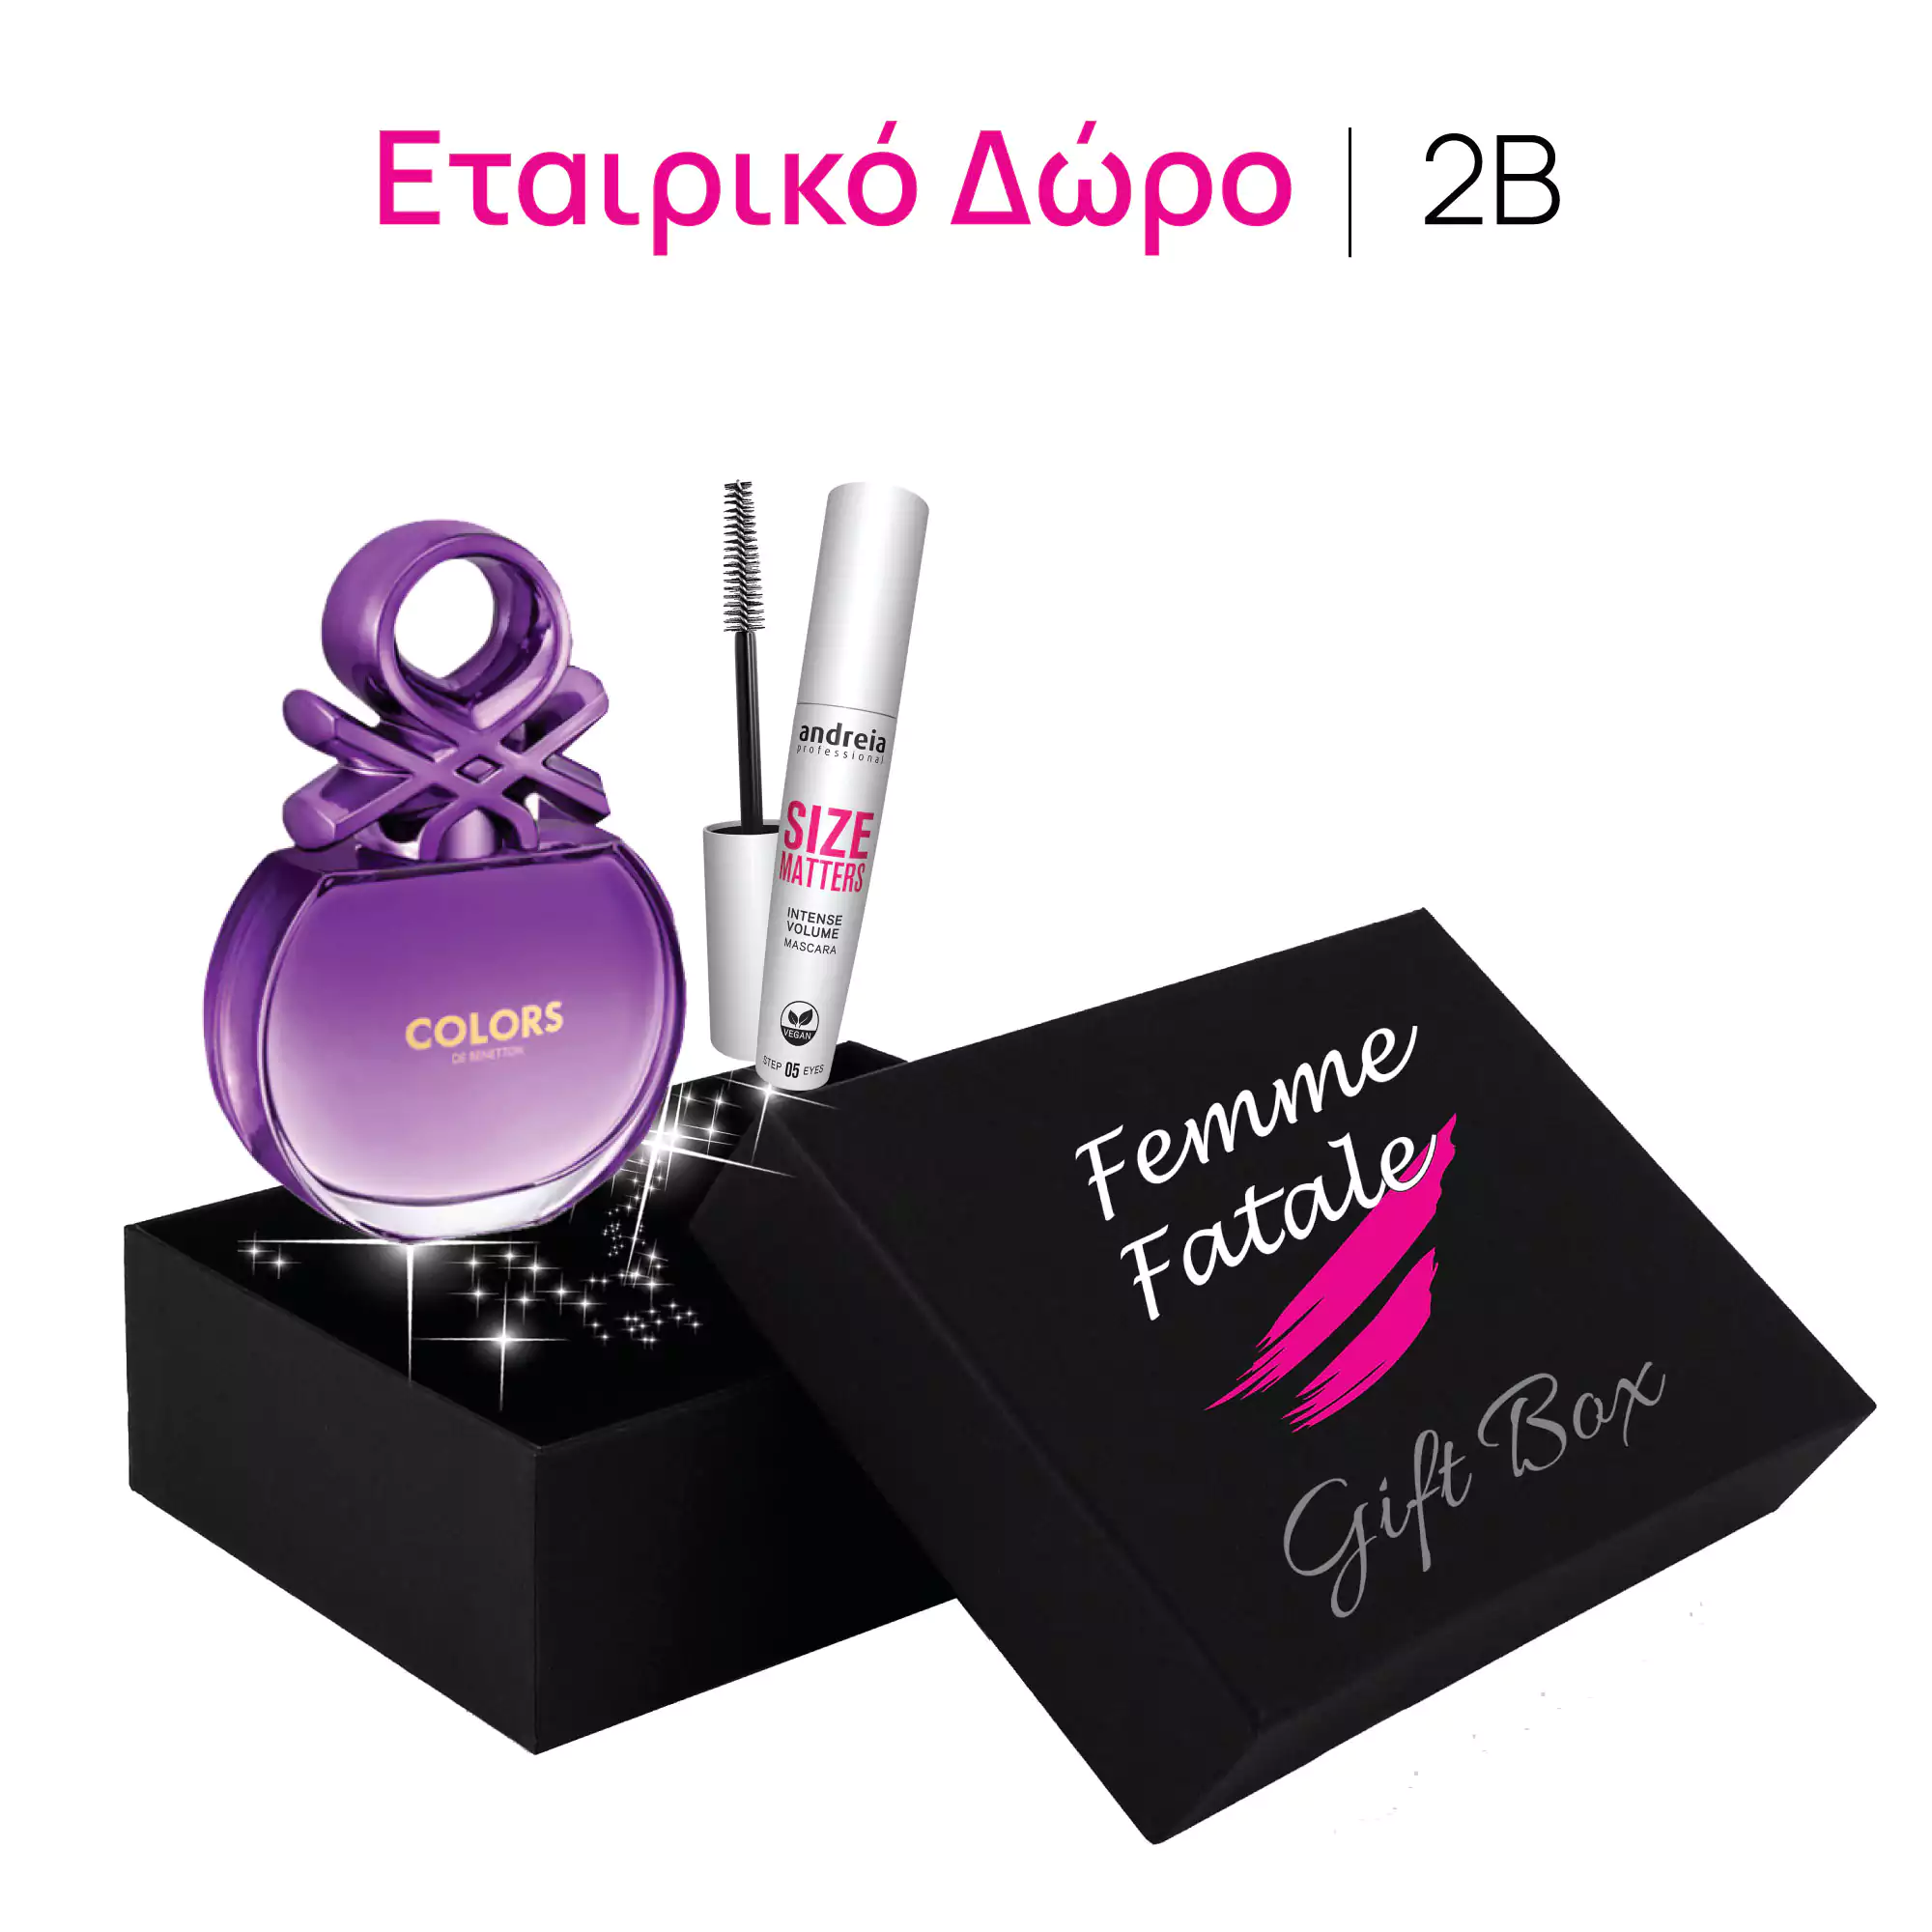 Επιχειρηματικό Δώρο Eπιλογή 2B | Femme Fatale - Femme Fatale - 